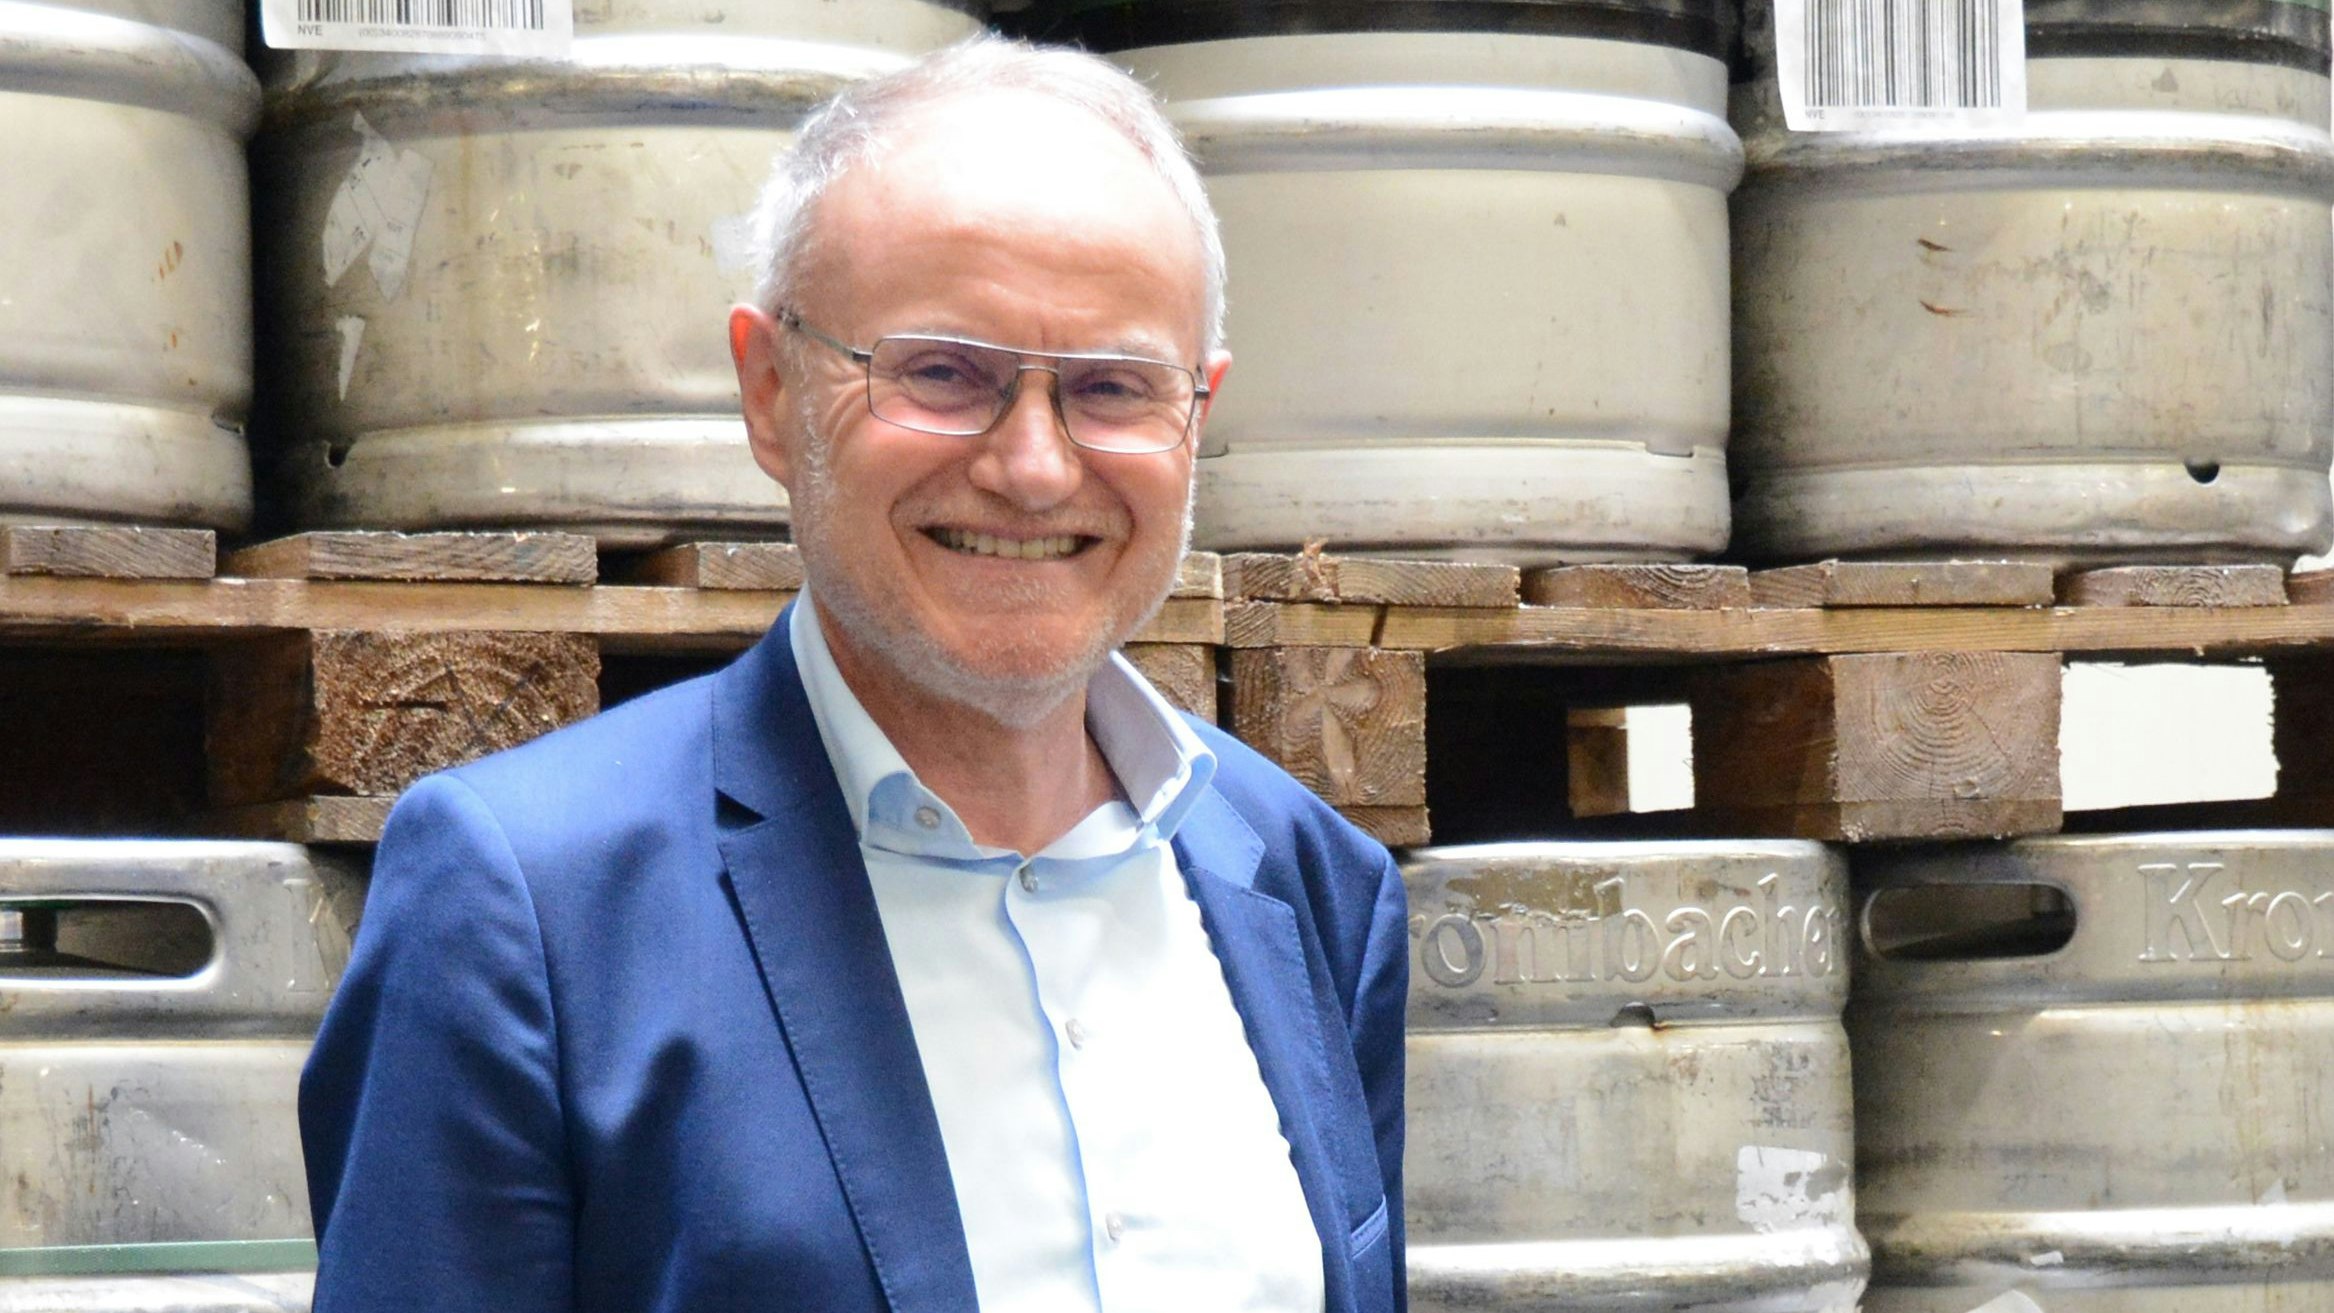 Freut sich auf die neue Zeit: Günther Tebben, Geschäftsführer von Getränke Brügging. Foto: Hermes